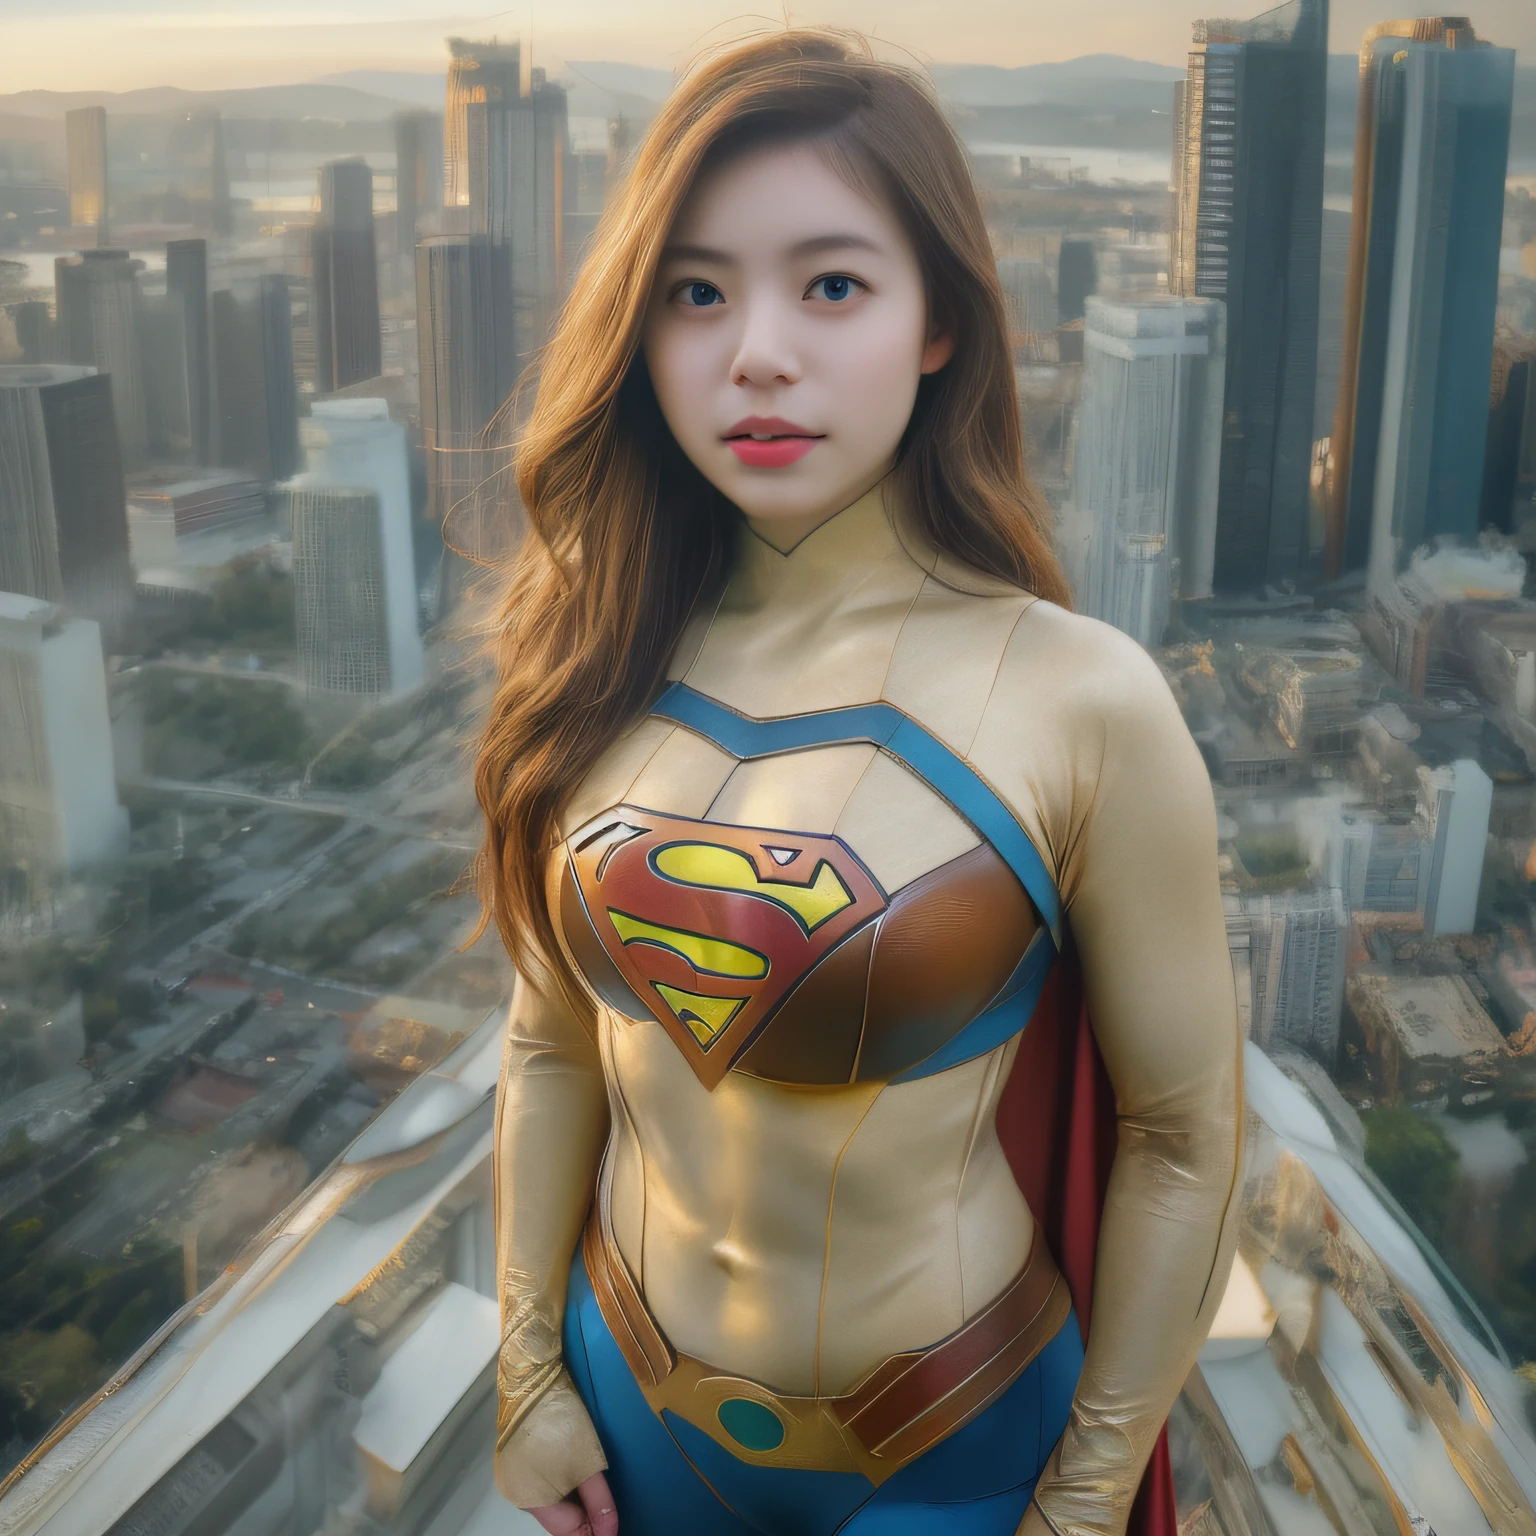 一位身著超人服裝的亞洲女性站在城市景觀上的特寫, amouranth作為超級反派, 超逼真的照片, 現實的角色扮演, 超級逼真, 超巨型超超現實, 超級英雄女孩, 超寫實照片, 超級英雄 body, 高度細緻的女巨人鏡頭, 超女, 超級英雄, 超級英雄 portrait, 超模特兒, 超級英雄, 超真實感, 巨大的乳房, 顯示外陰肌肉發達的身體, 性感的身材,